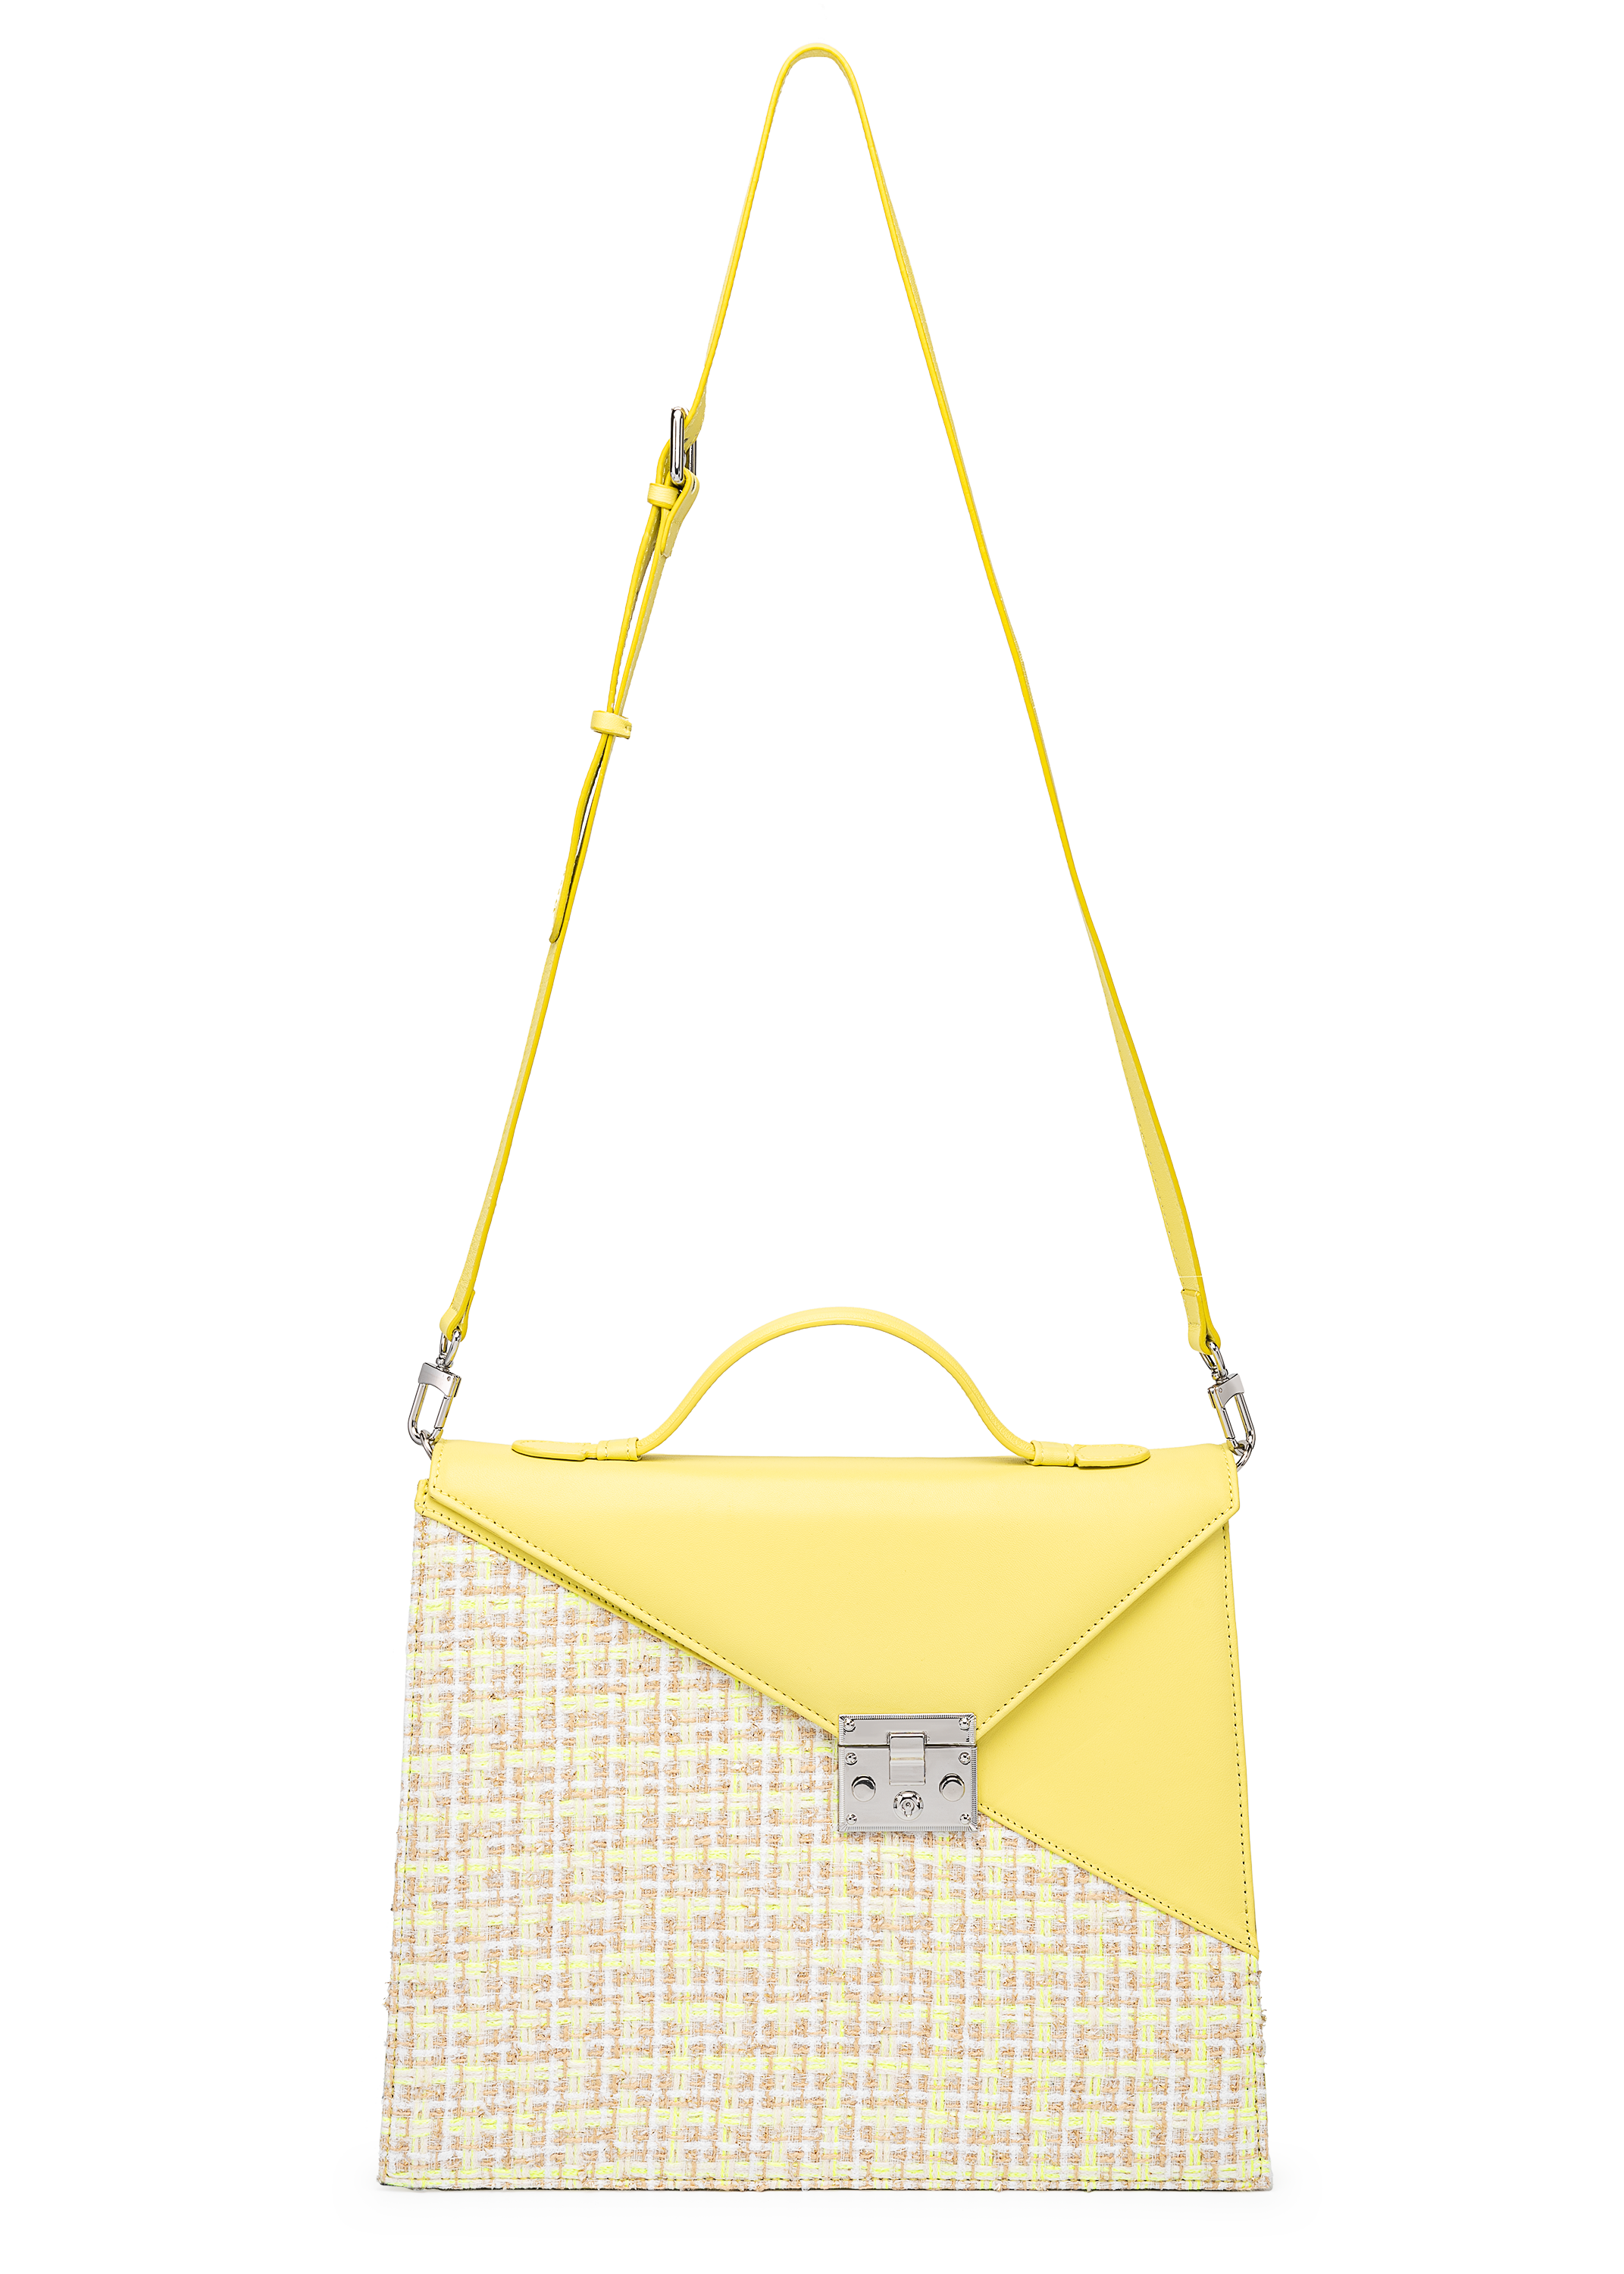 SILVIA 1960 Canary yellow handbag with strap